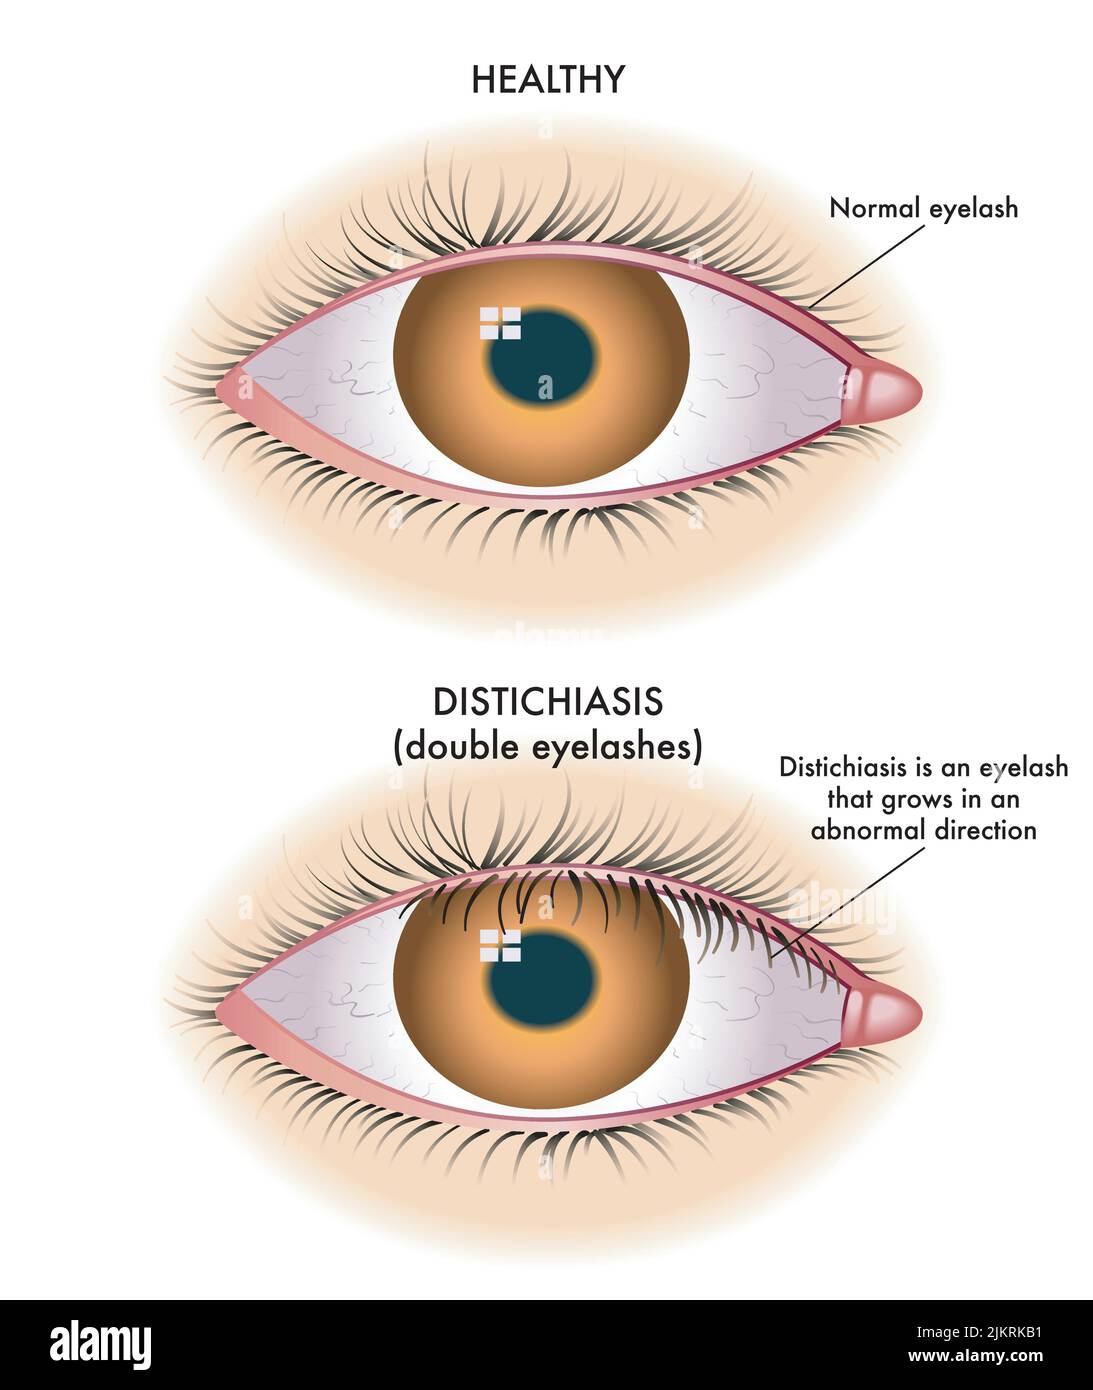 L'illustrazione medica mostra il confronto tra un occhio normale e uno affetto da distichiasi. Illustrazione Vettoriale